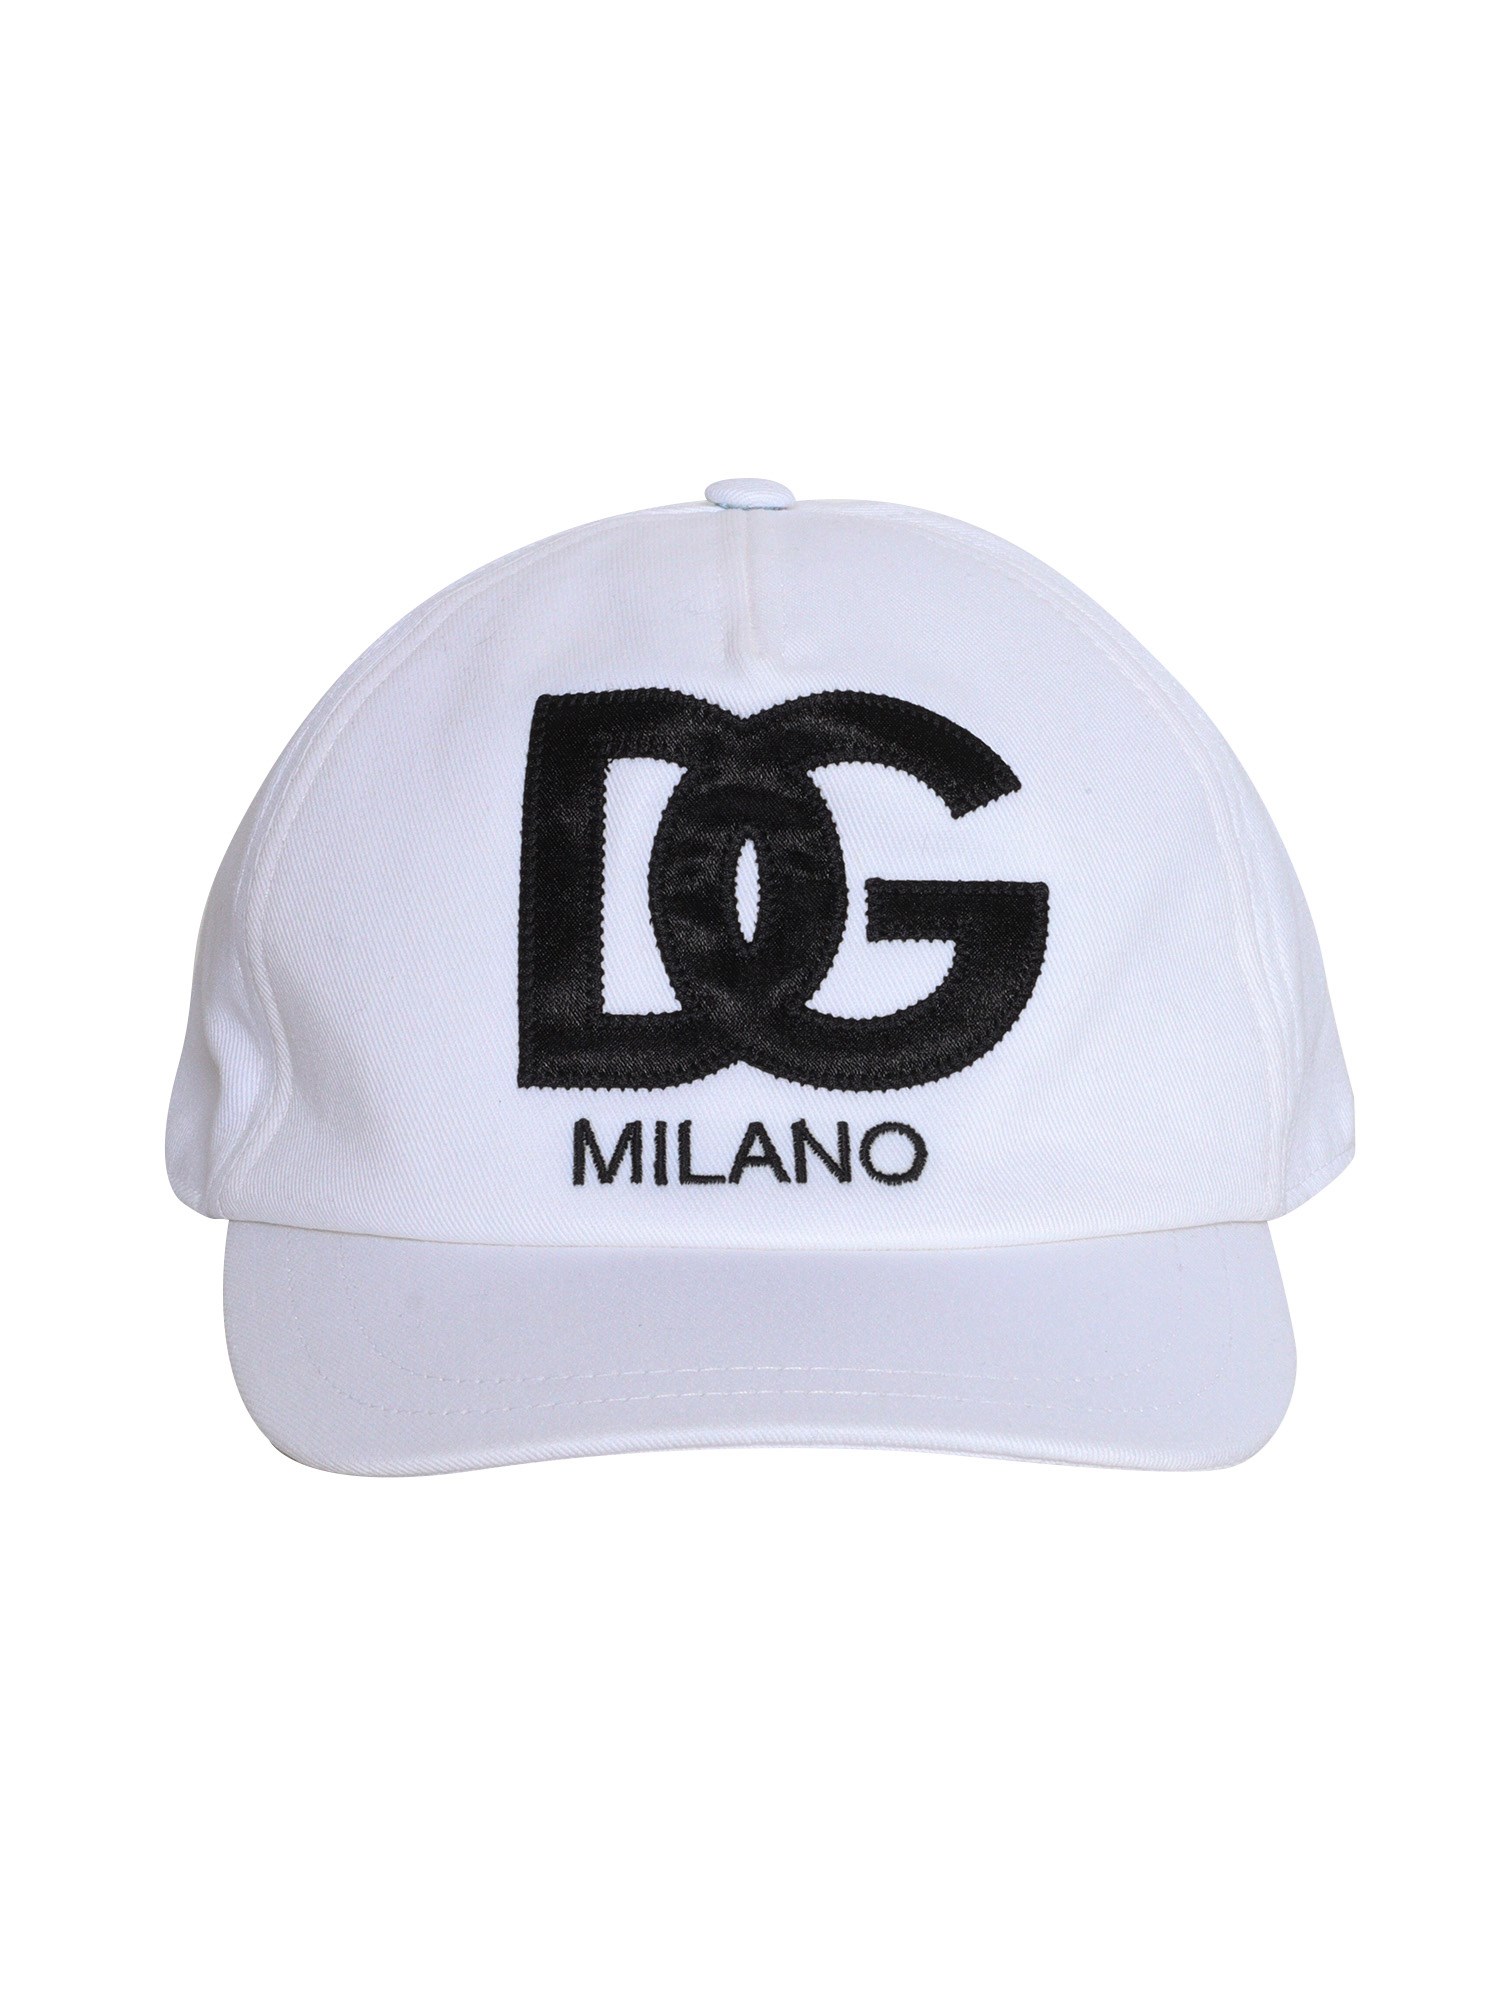 Dolce & Gabbana Junior Dg Baseball Cap In White